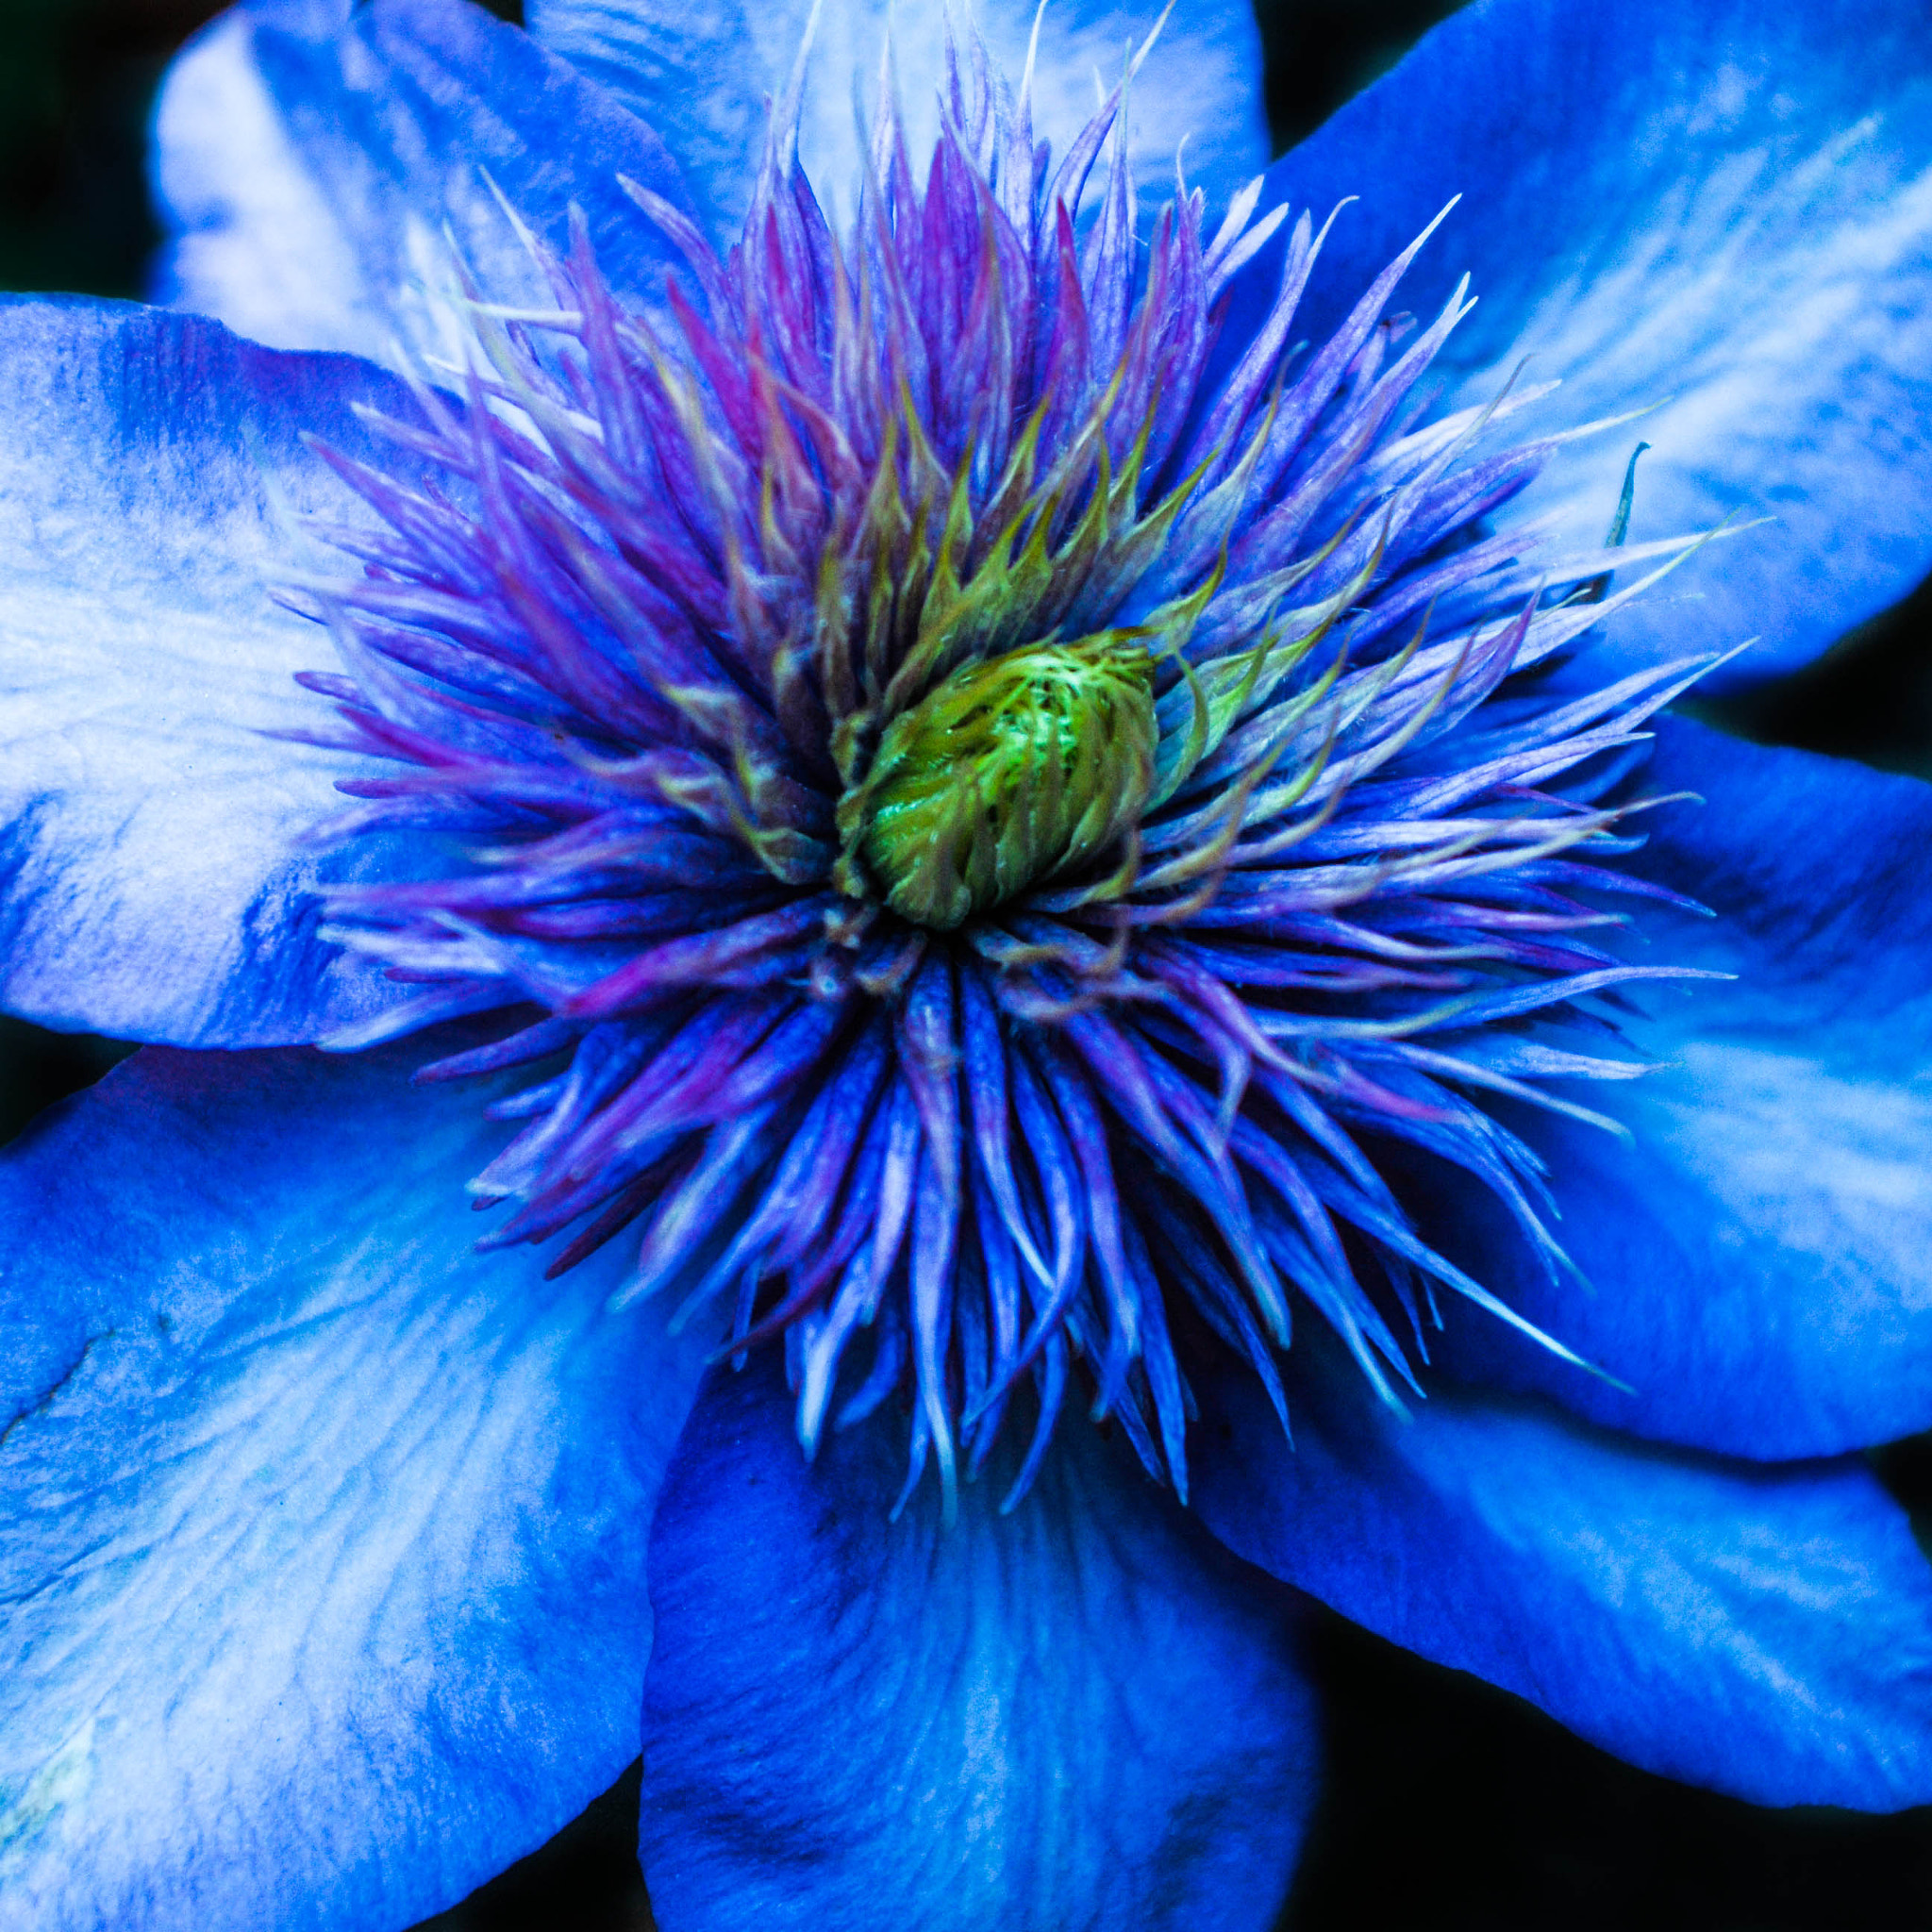 Nikon D200 + AF Zoom-Nikkor 28-85mm f/3.5-4.5 sample photo. Fleur bleue photography